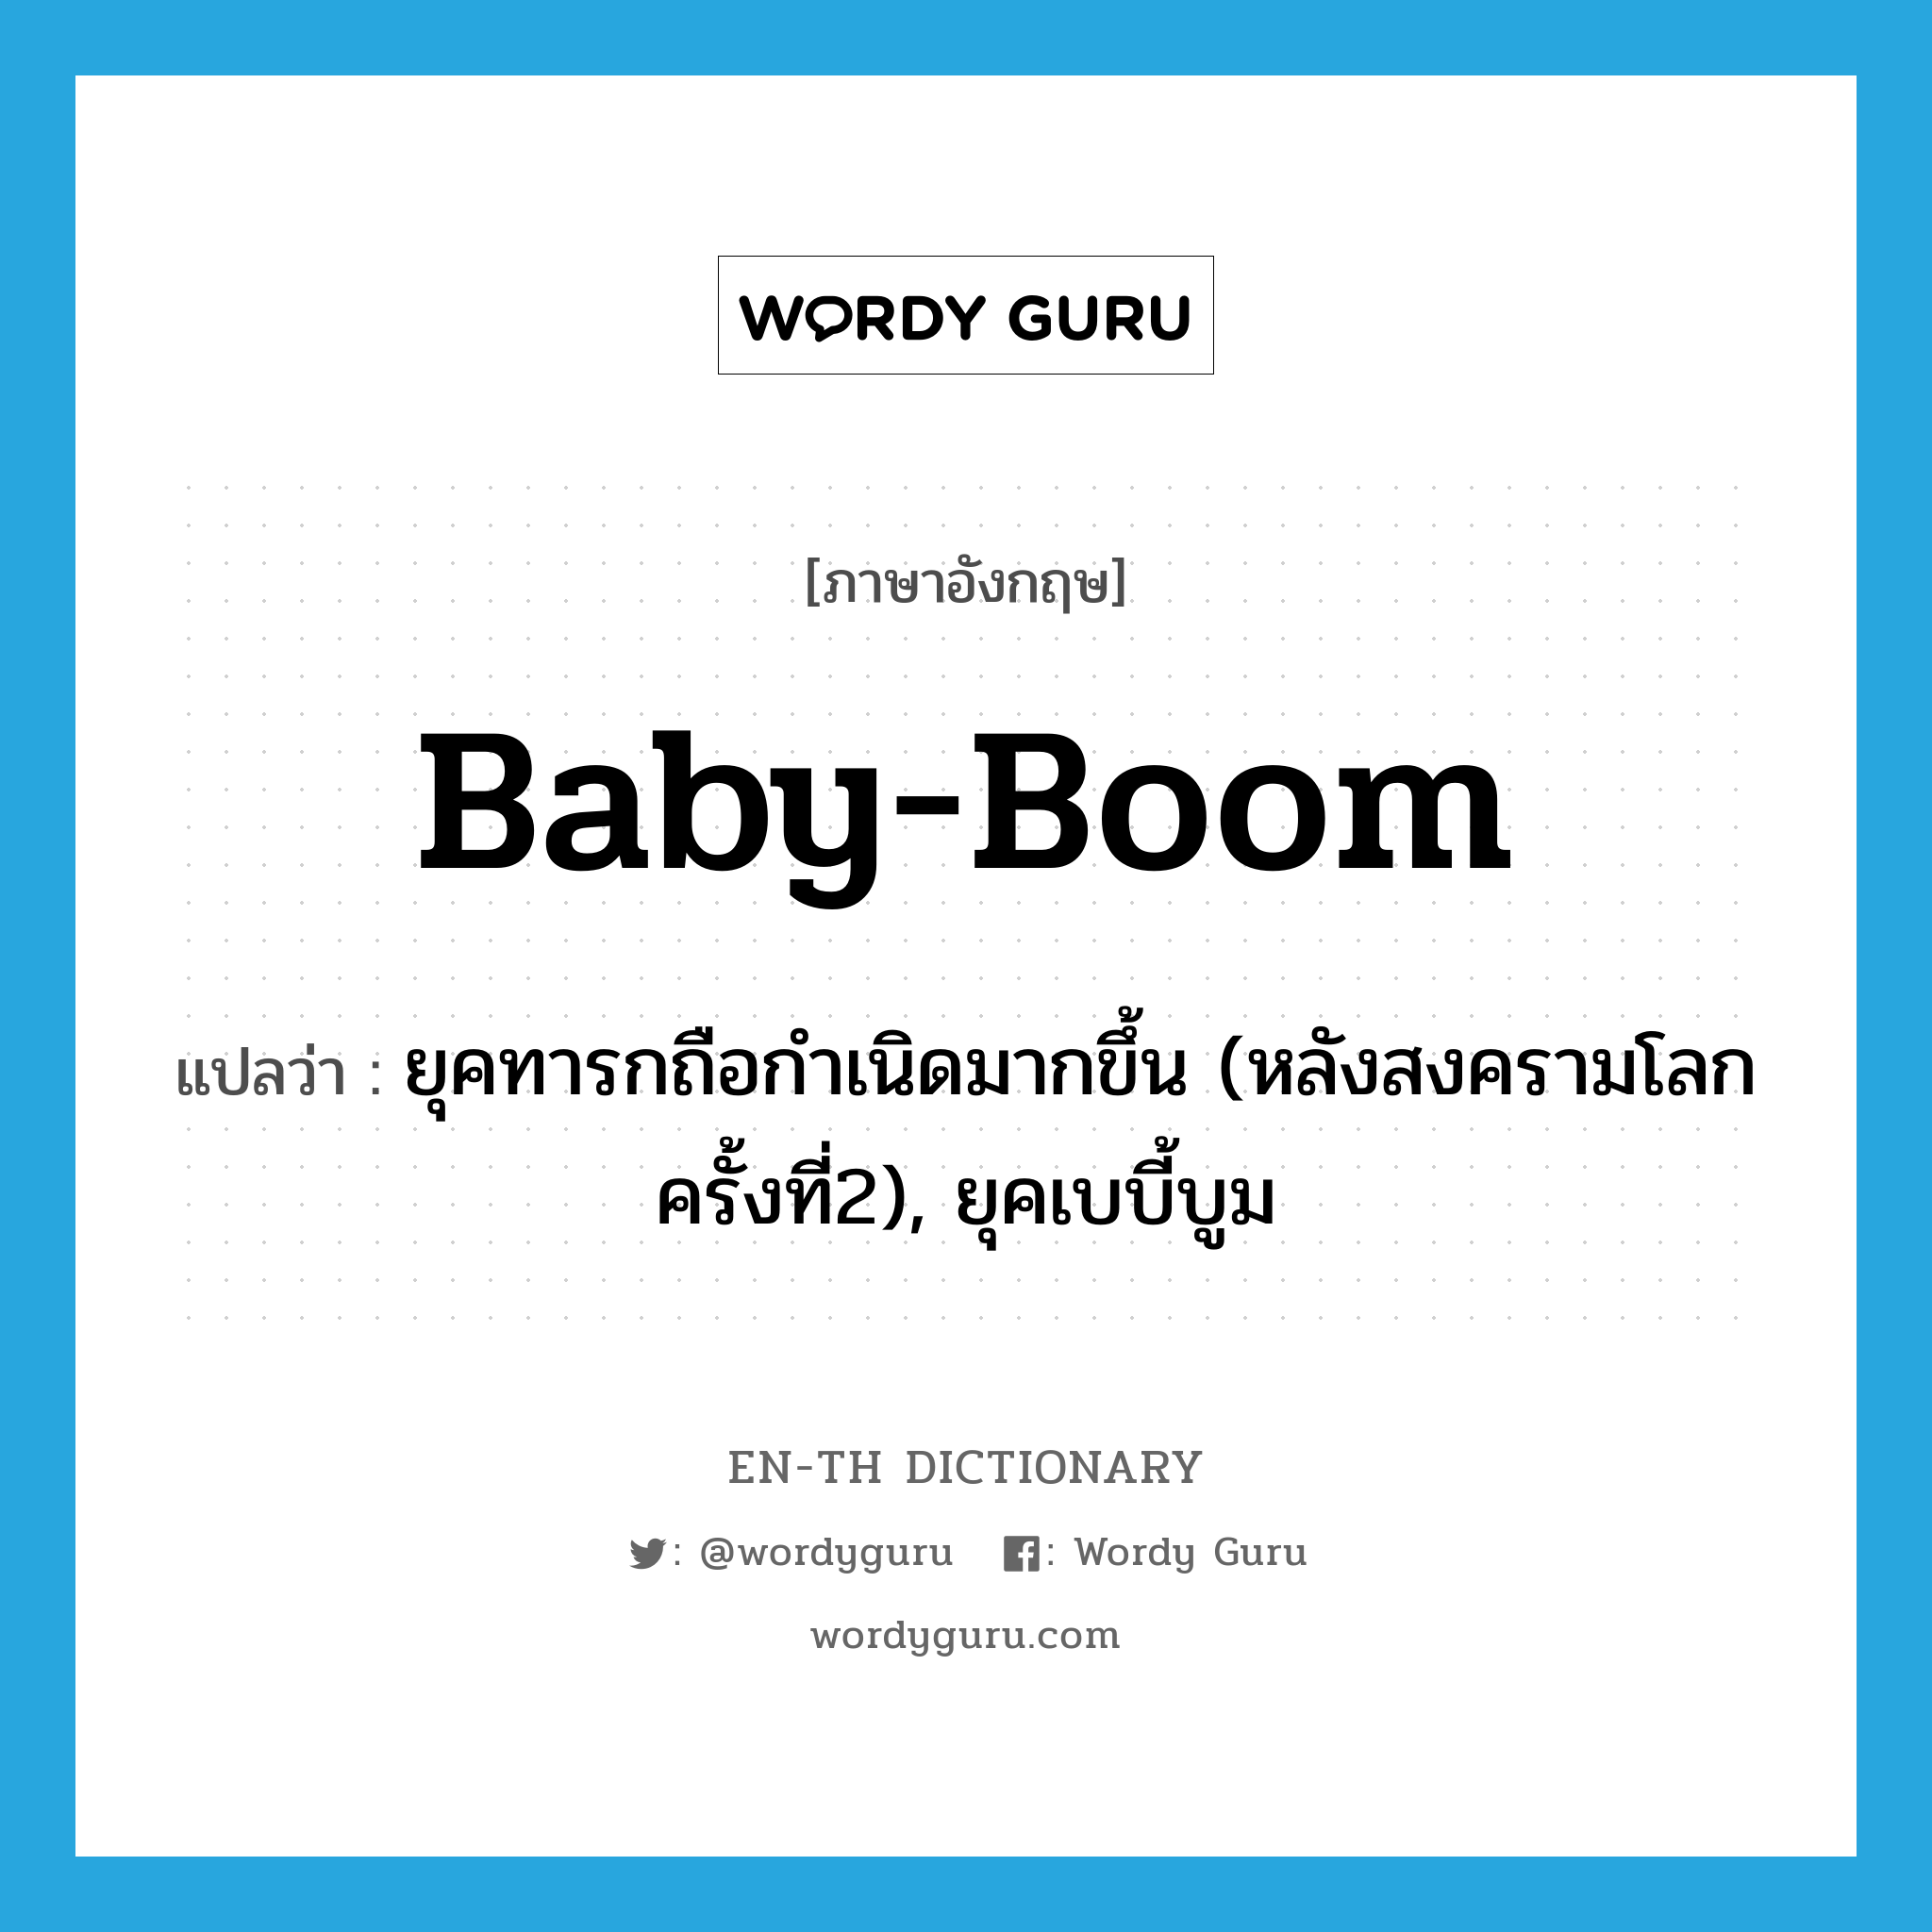 ยุคทารกถือกำเนิดมากขึ้น (หลังสงครามโลกครั้งที่2), ยุคเบบี้บูม ภาษาอังกฤษ?, คำศัพท์ภาษาอังกฤษ ยุคทารกถือกำเนิดมากขึ้น (หลังสงครามโลกครั้งที่2), ยุคเบบี้บูม แปลว่า baby-boom ประเภท N หมวด N